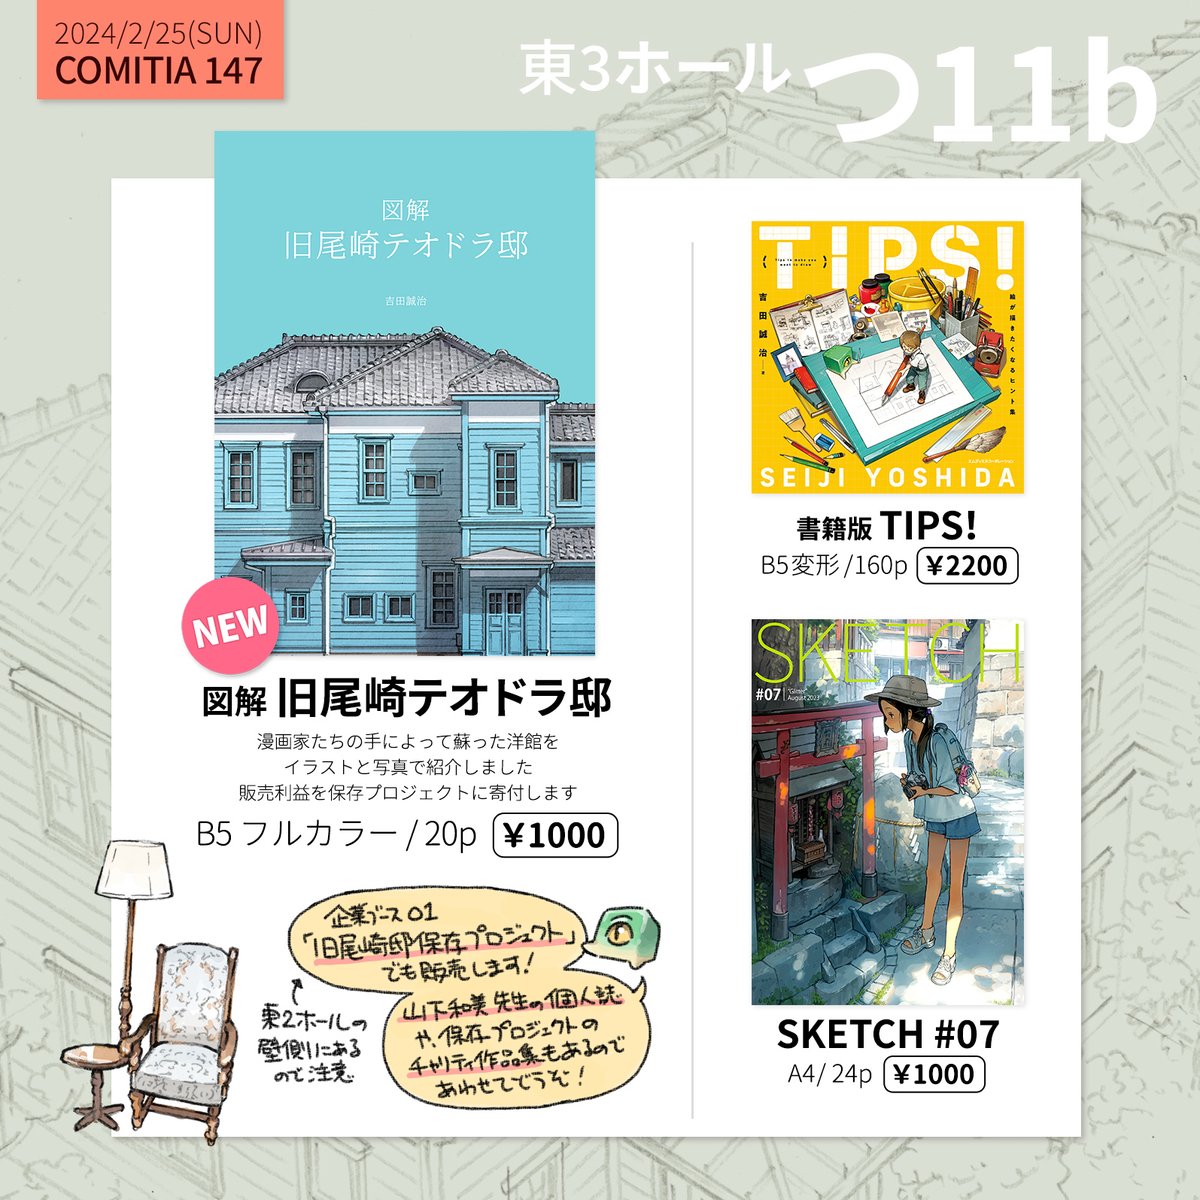 2/25(日) 東京ビッグサイトで開催されるコミティア147に参加します。新刊は、3月に正式オープンする旧尾崎テオドラ邸の図解本です。よろしくお願いします! #COMITIA147 